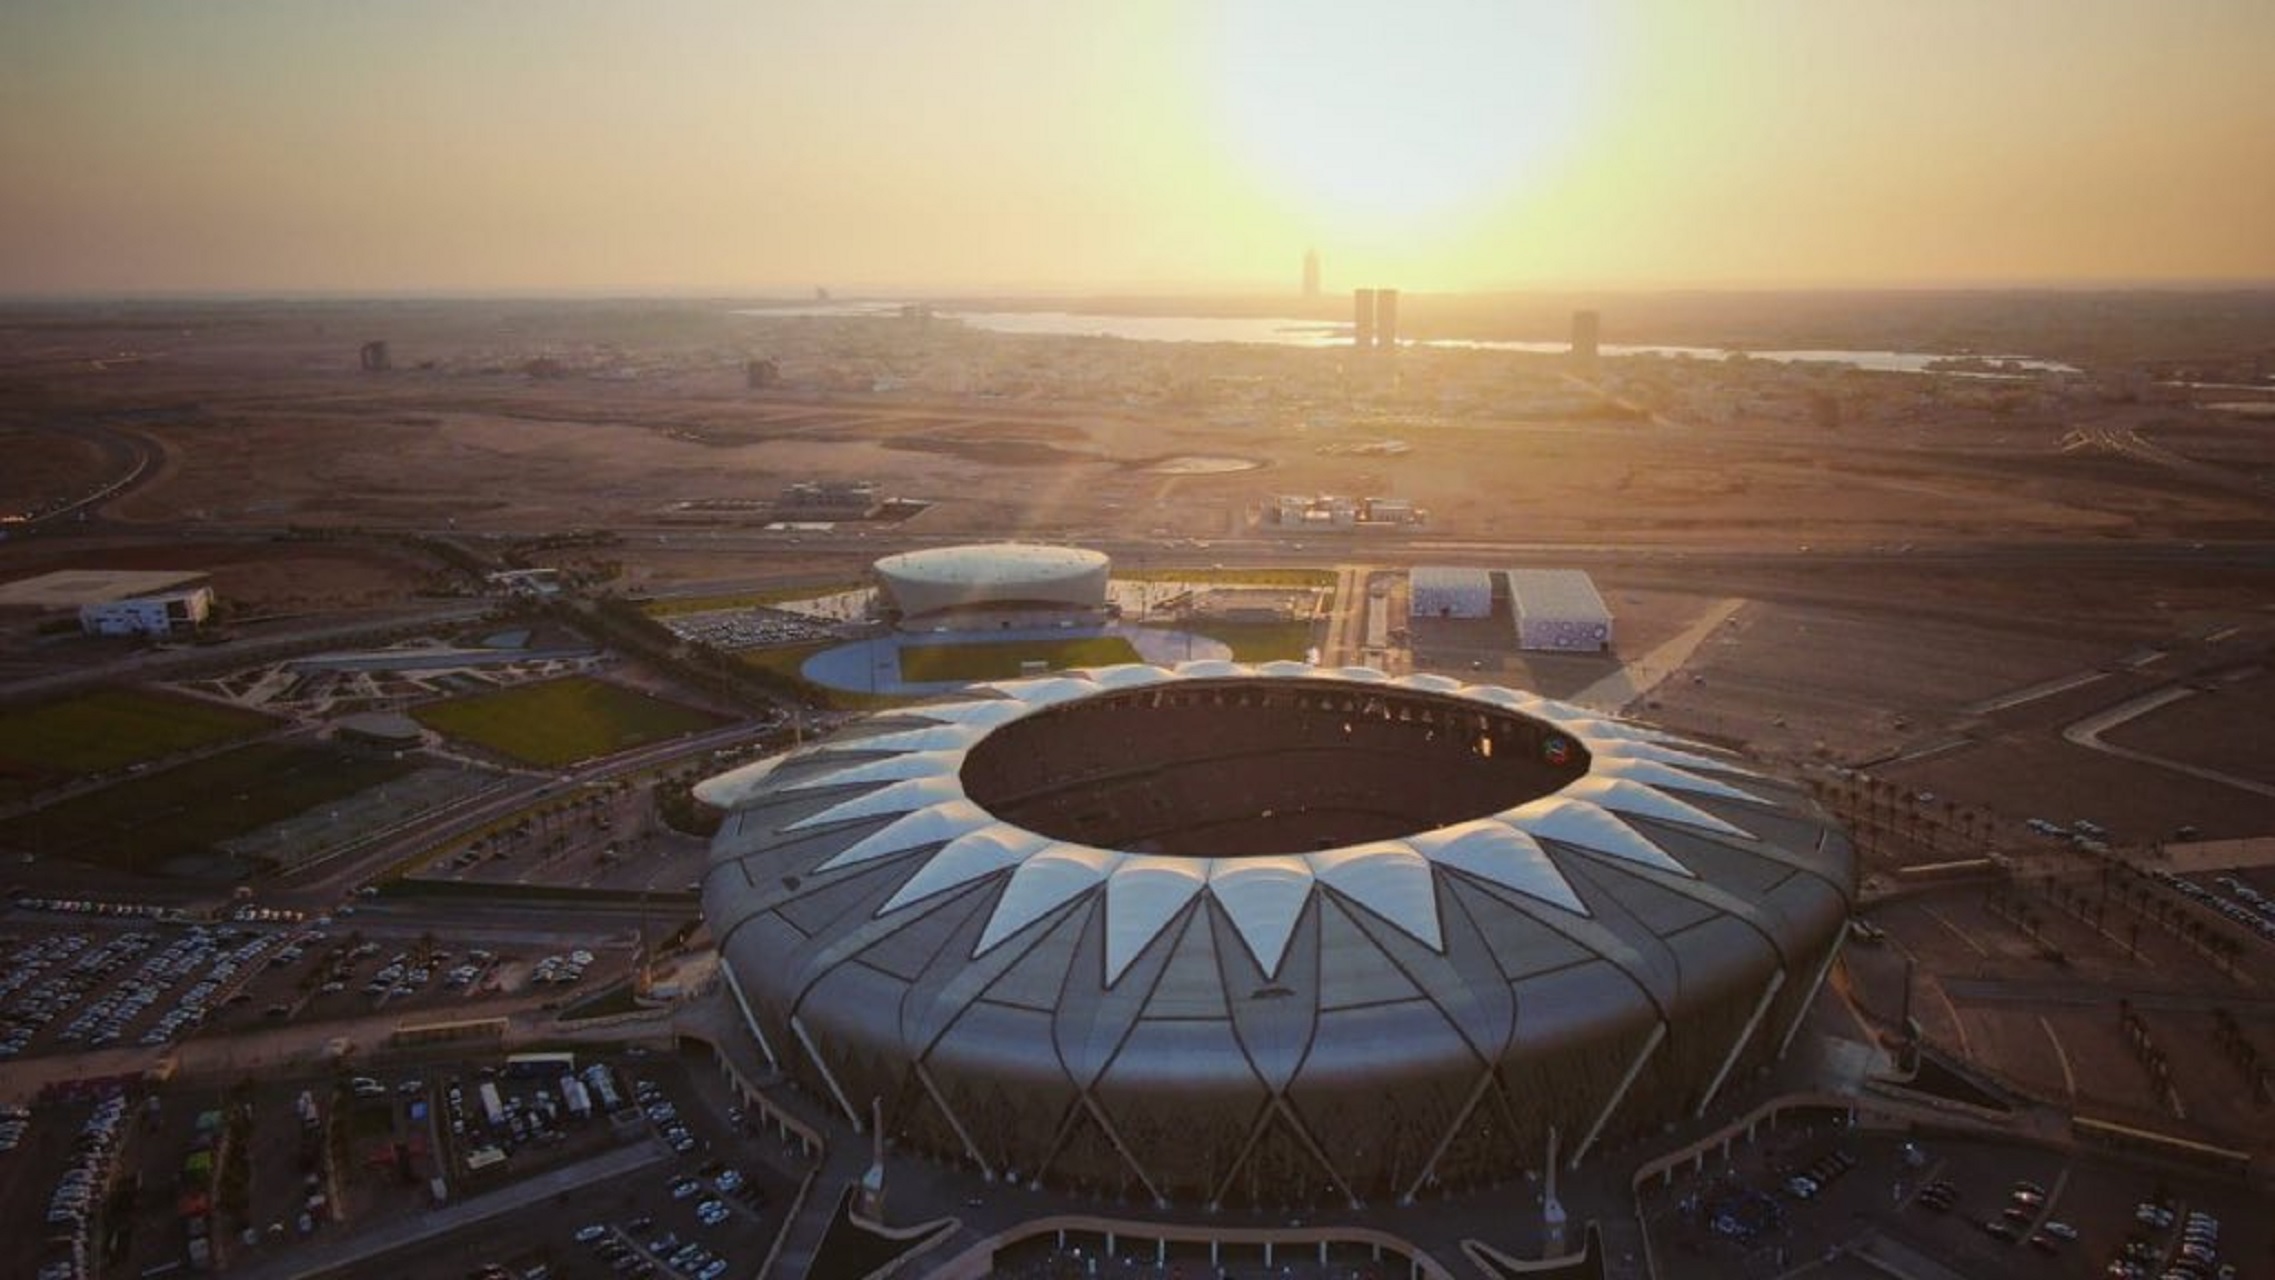 ملف السعودية لكأس العالم 2034 يهدف لتنظيم بطولة استثنائية